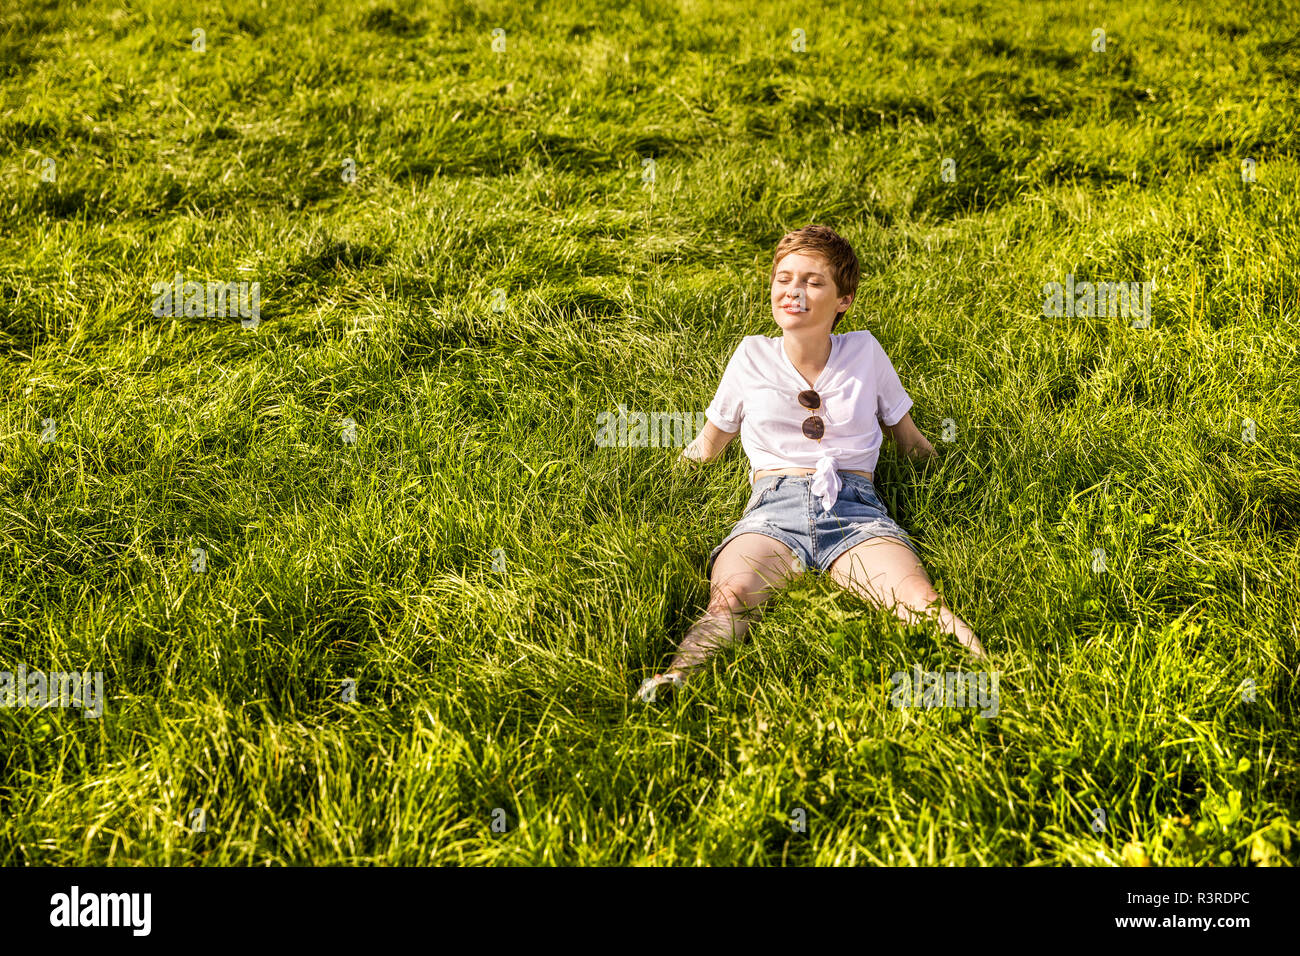 Woman in field enjoying sunlight Stock Photo